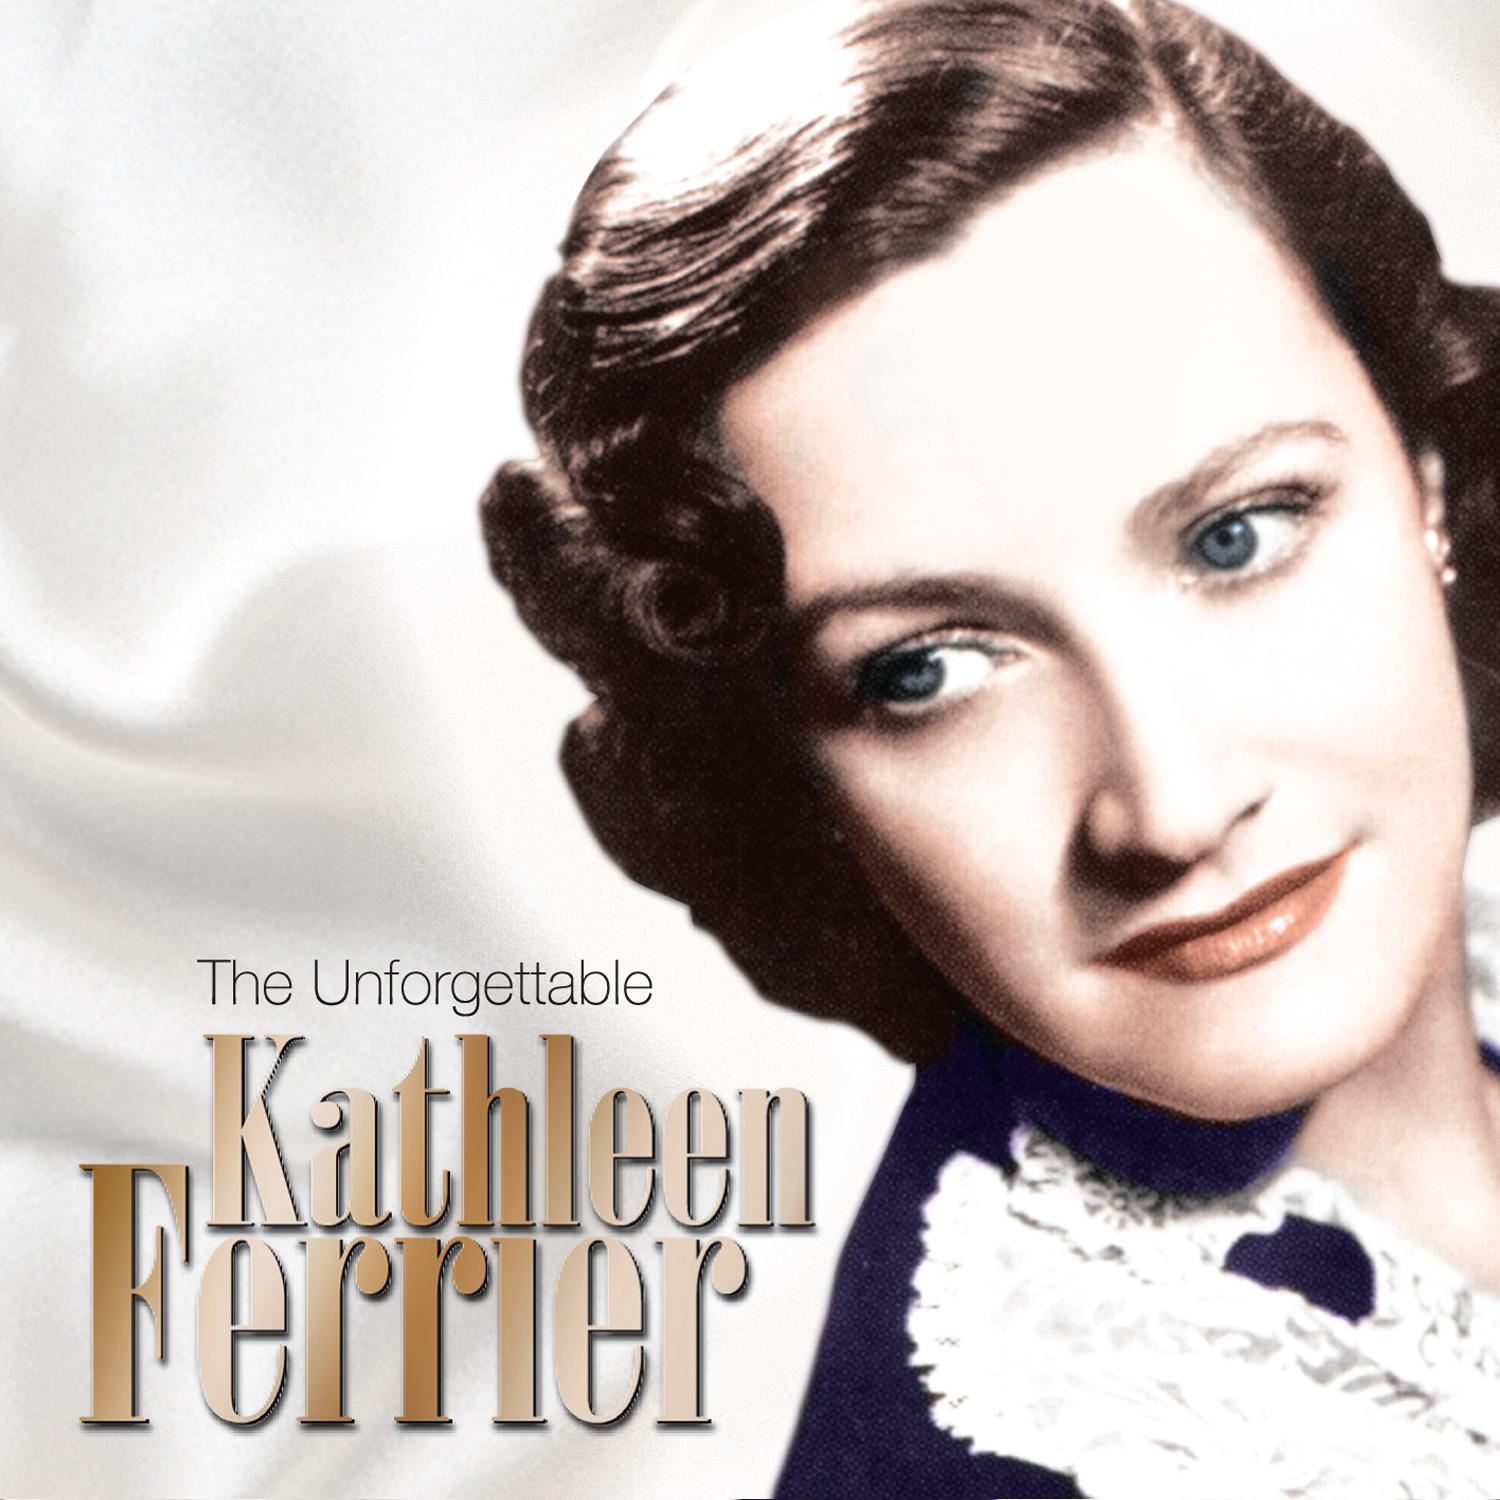 The Unforgetttable Kathleen Ferrier